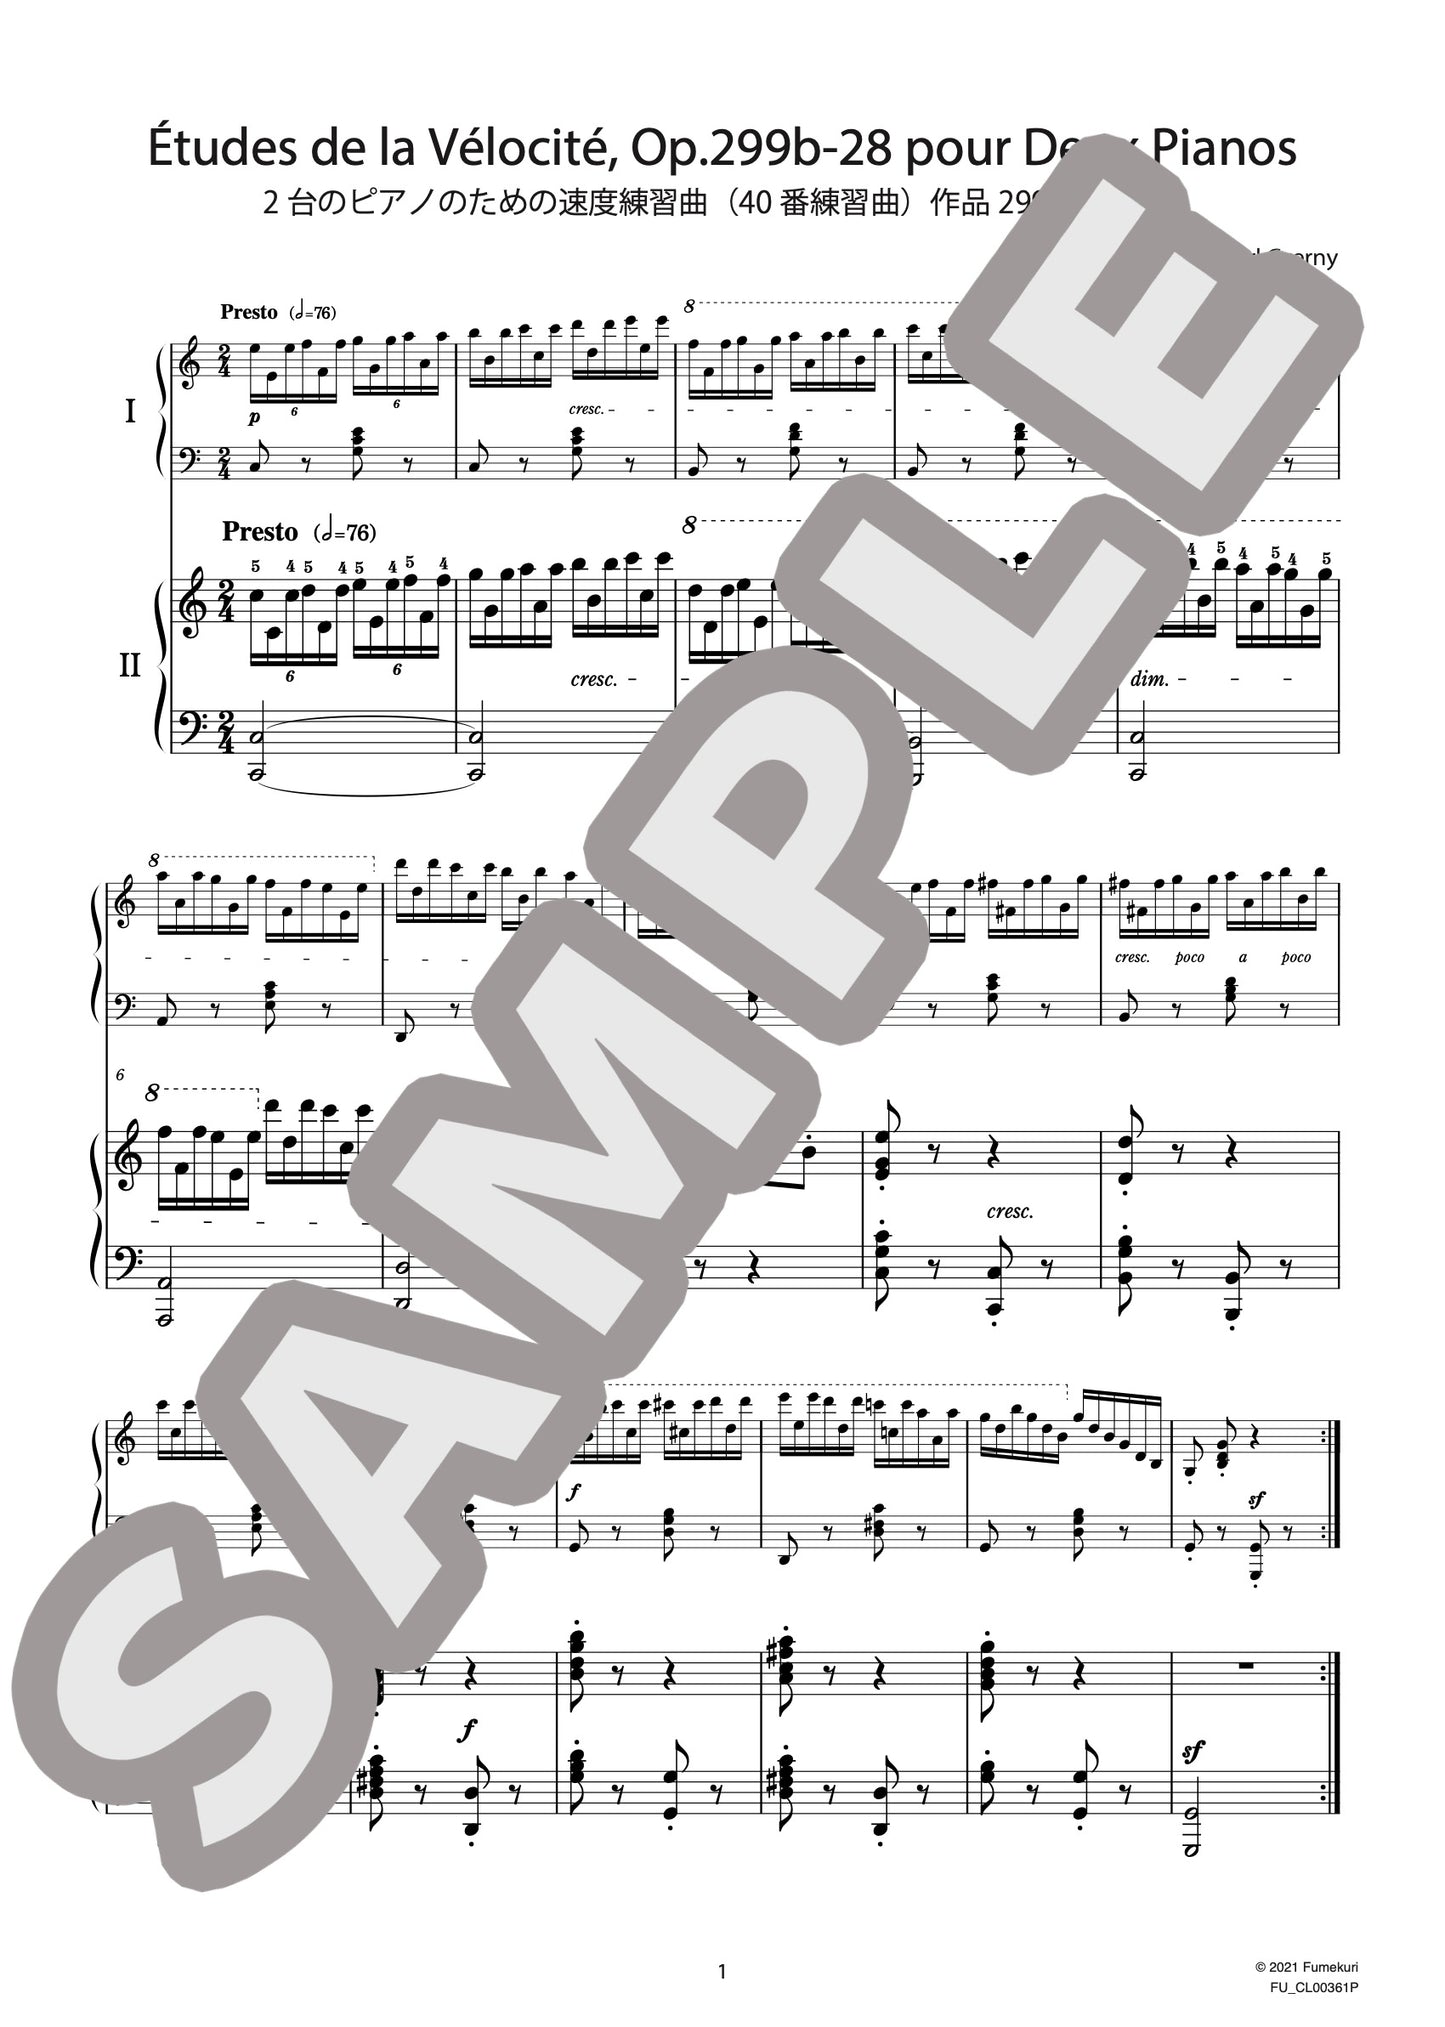 2台のピアノのための速度練習曲（40番練習曲）作品299b 第28番（CZERNY) / クラシック・オリジナル楽曲【中上級】